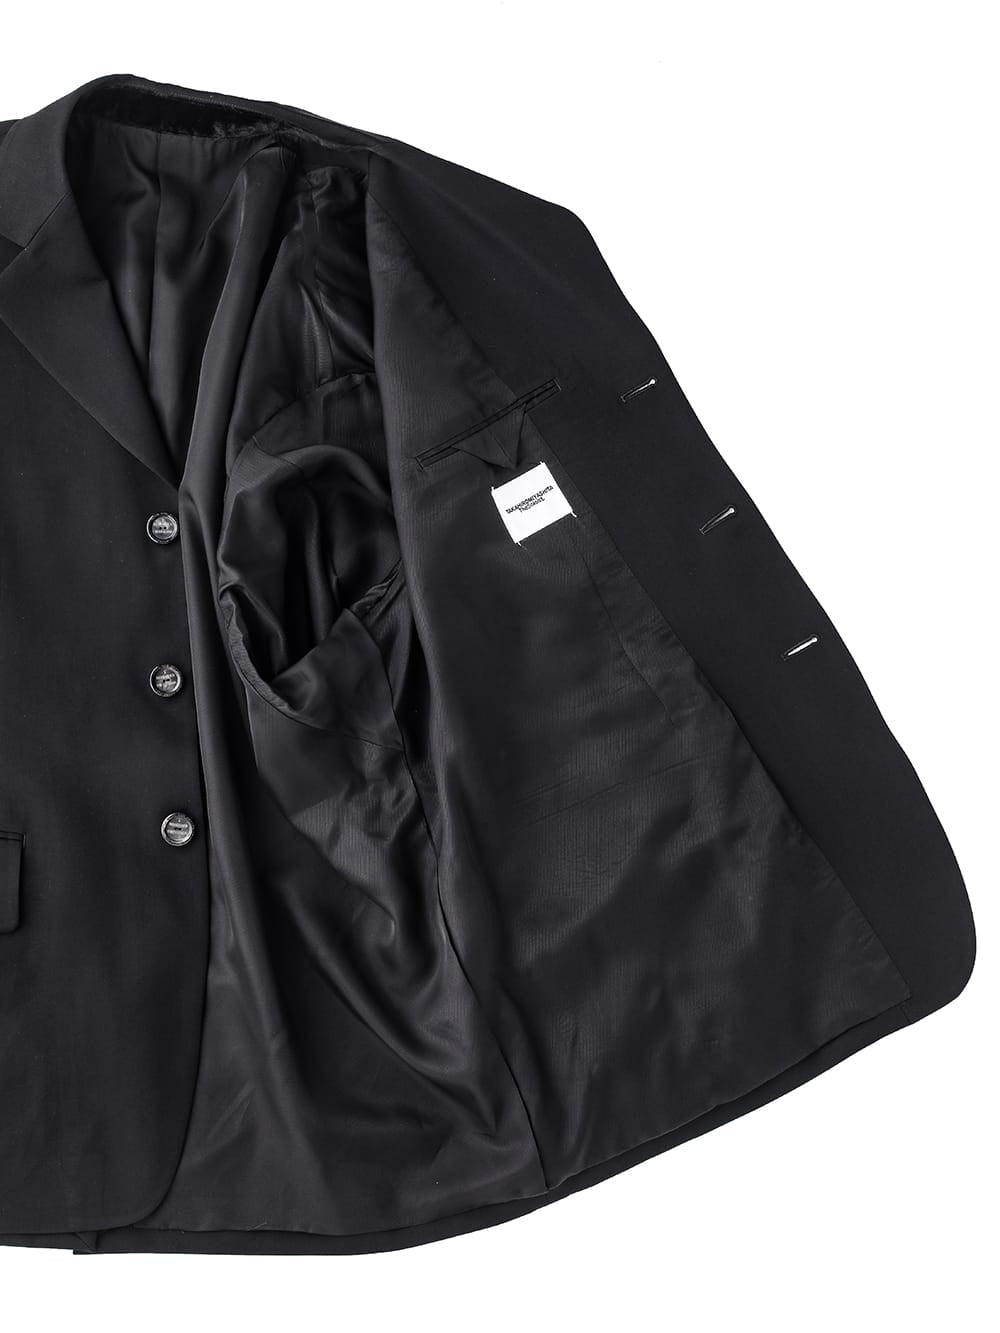 back gusset sleeve 3b notched lapel jacket.(clash)